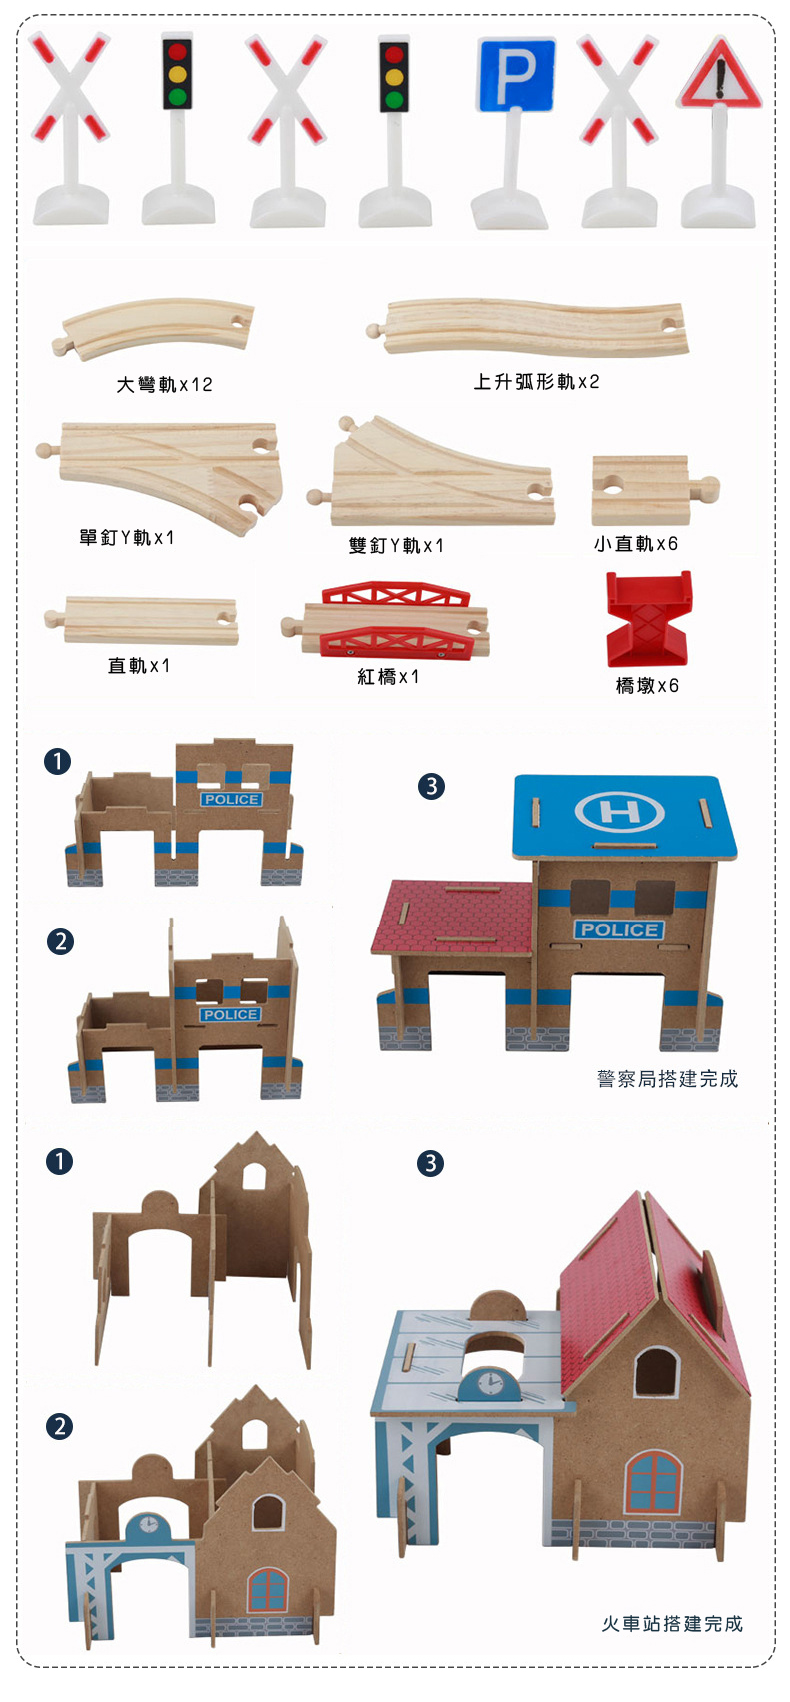 88件木製電動火車軌道組 全木製玩具 木製火車軌道組 兒童玩具